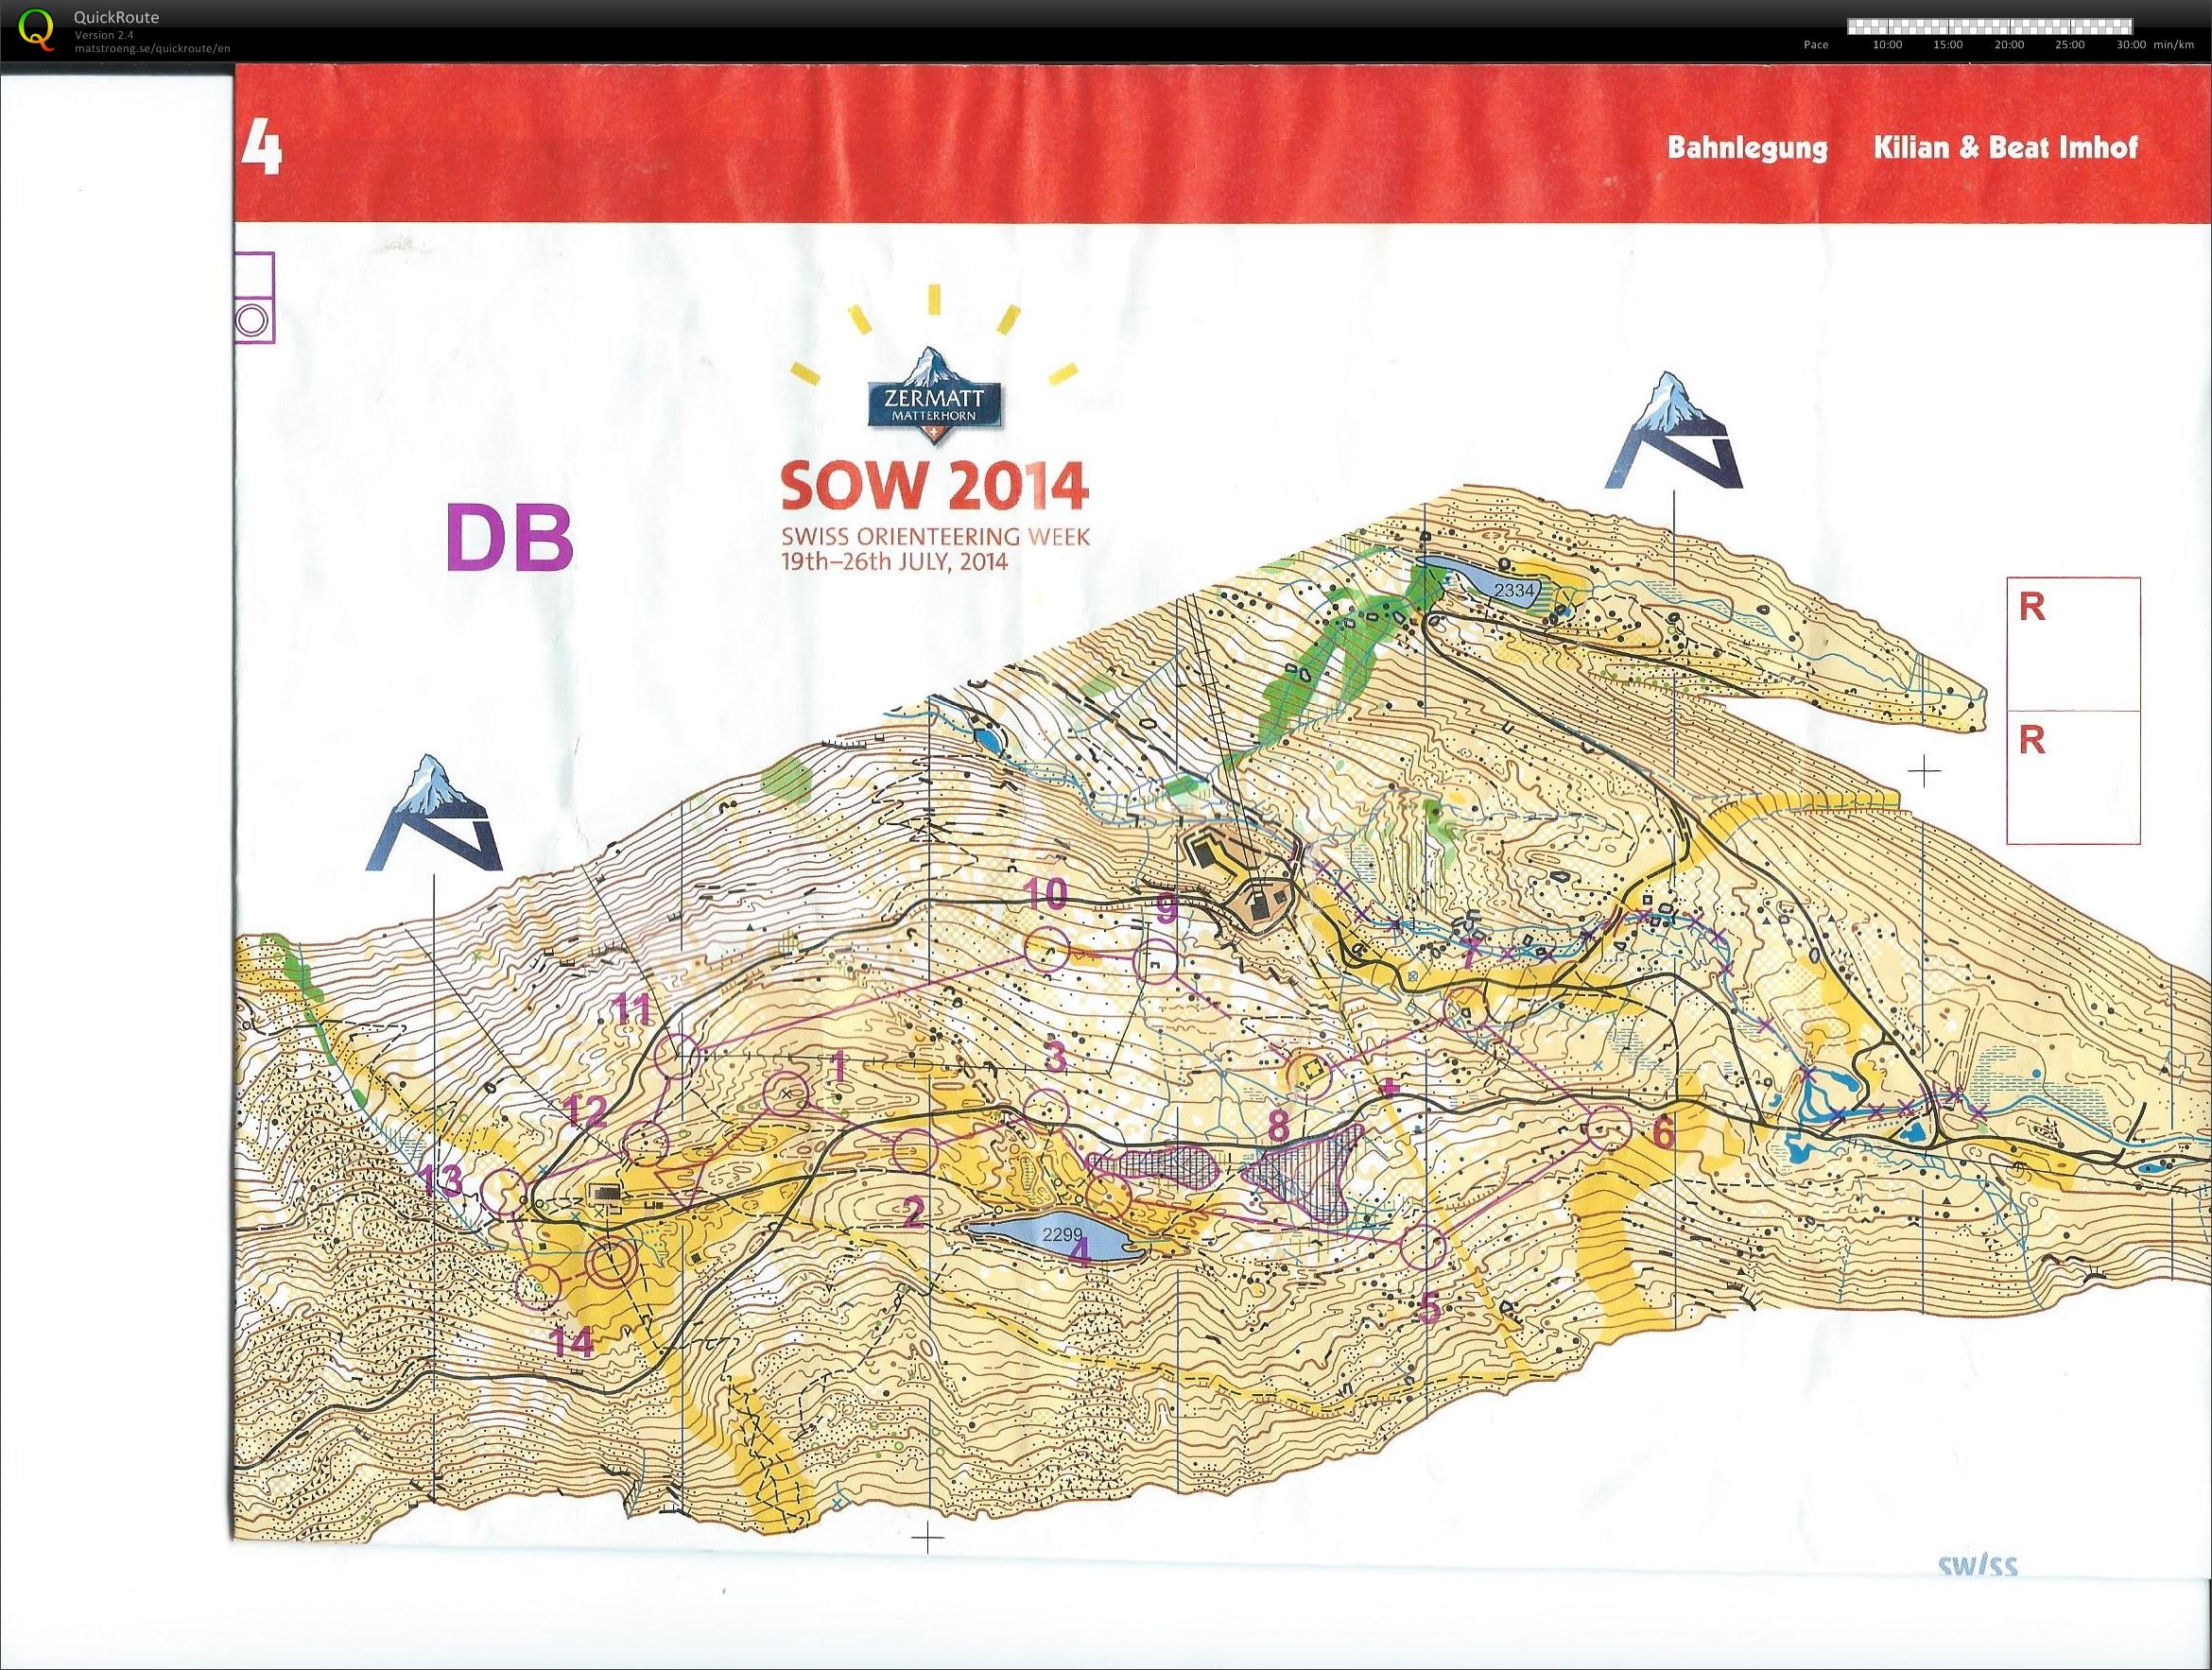 Swiss O-week etape 4 (24-07-2014)